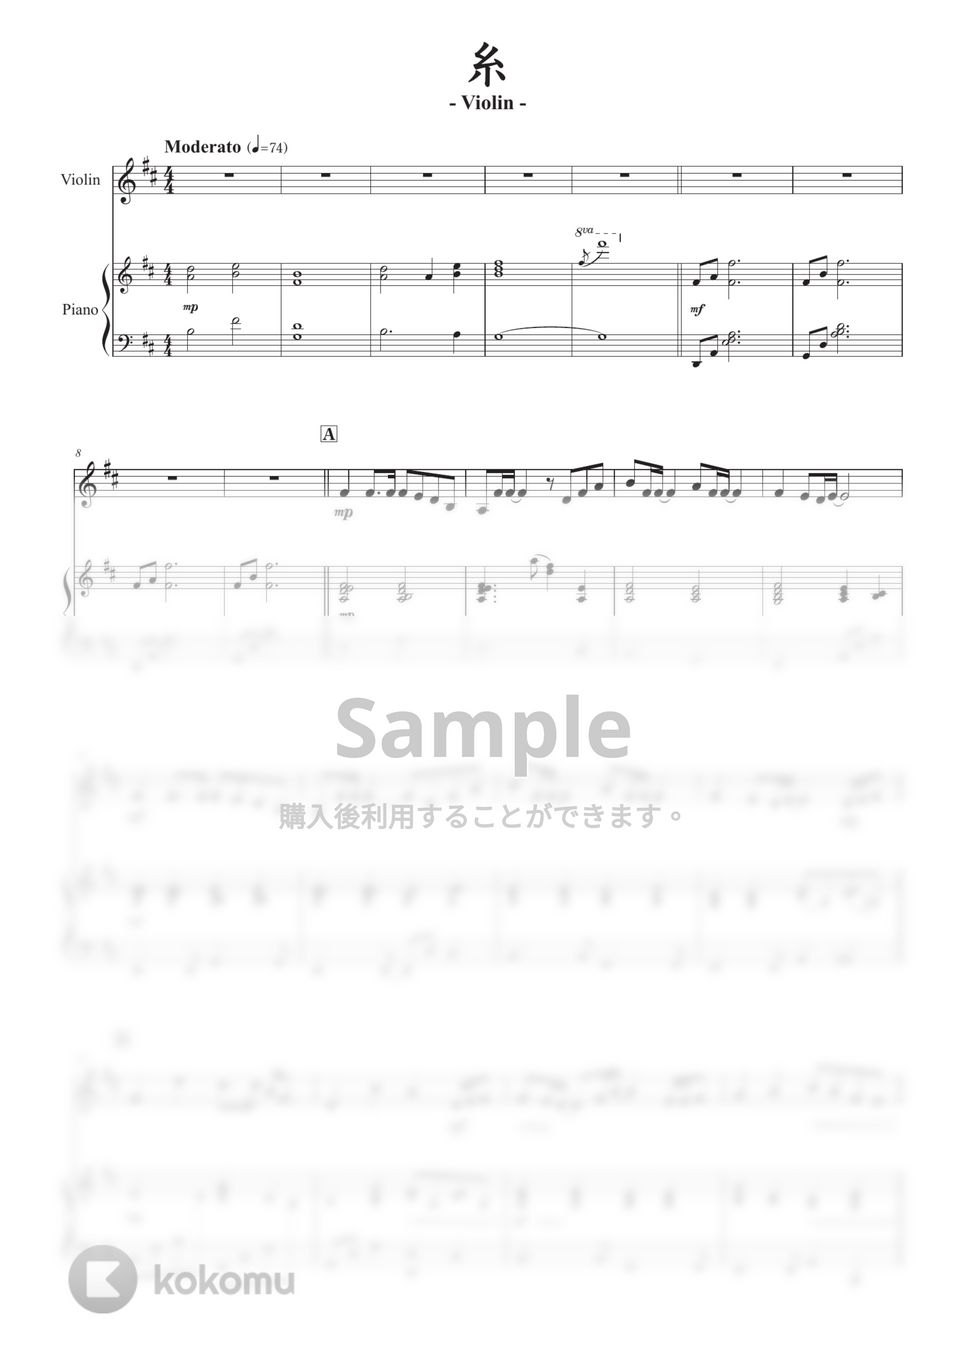 中島みゆき - 糸 (バイオリン版) by 栗原義継